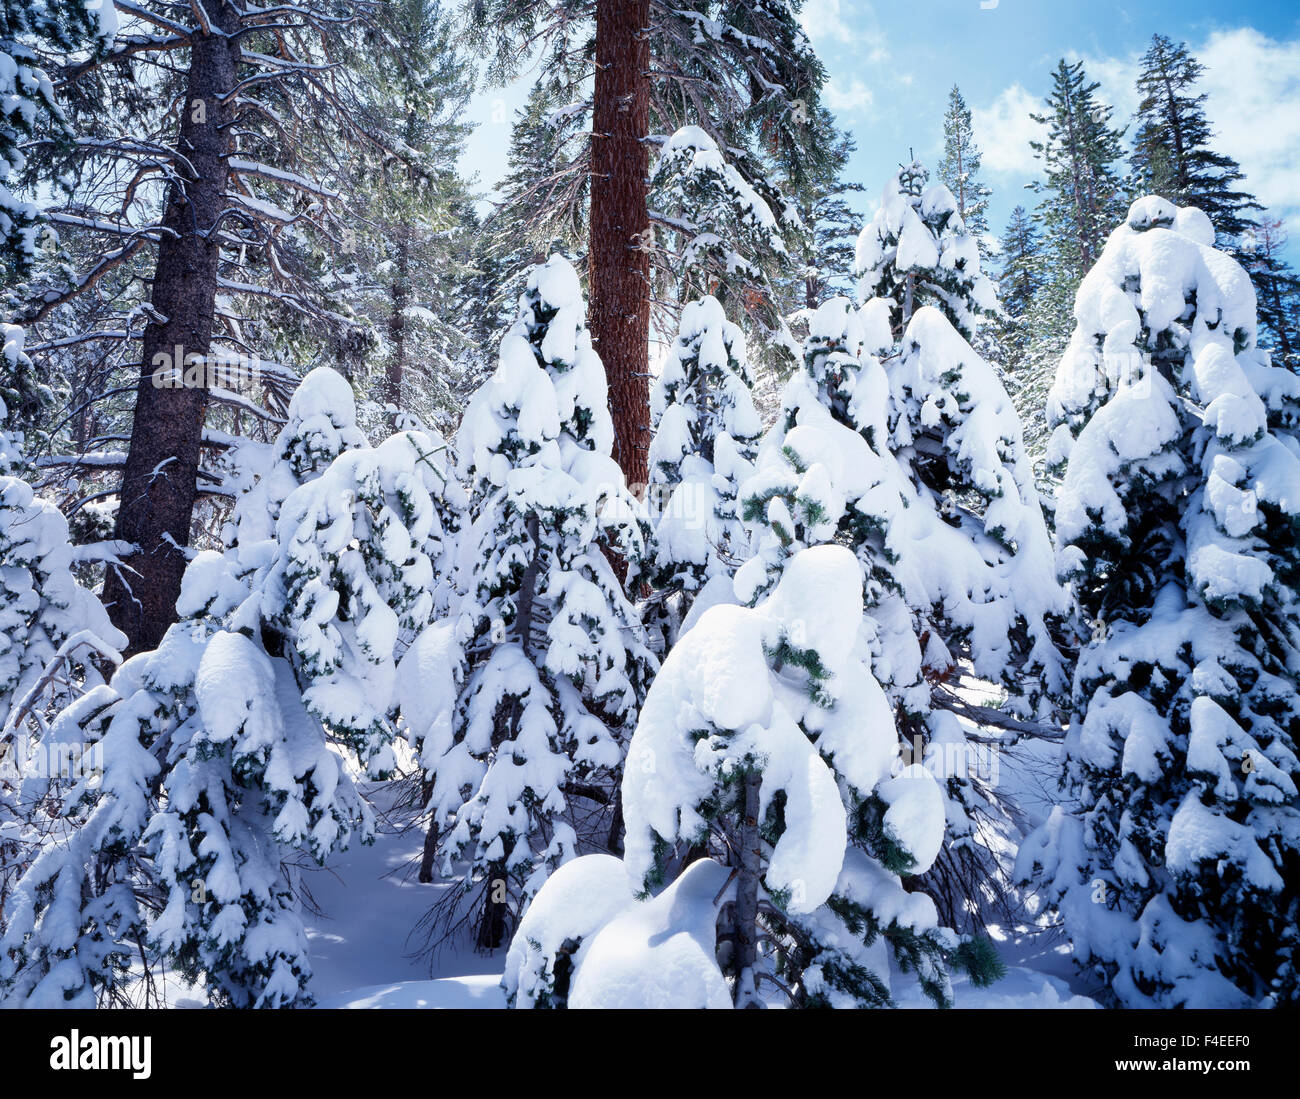 En Californie, la Sierra Nevada, Inyo National Forest, Rouge couverte de neige Sapin (Abies magnifica) forêt. Tailles disponibles (grand format) Banque D'Images